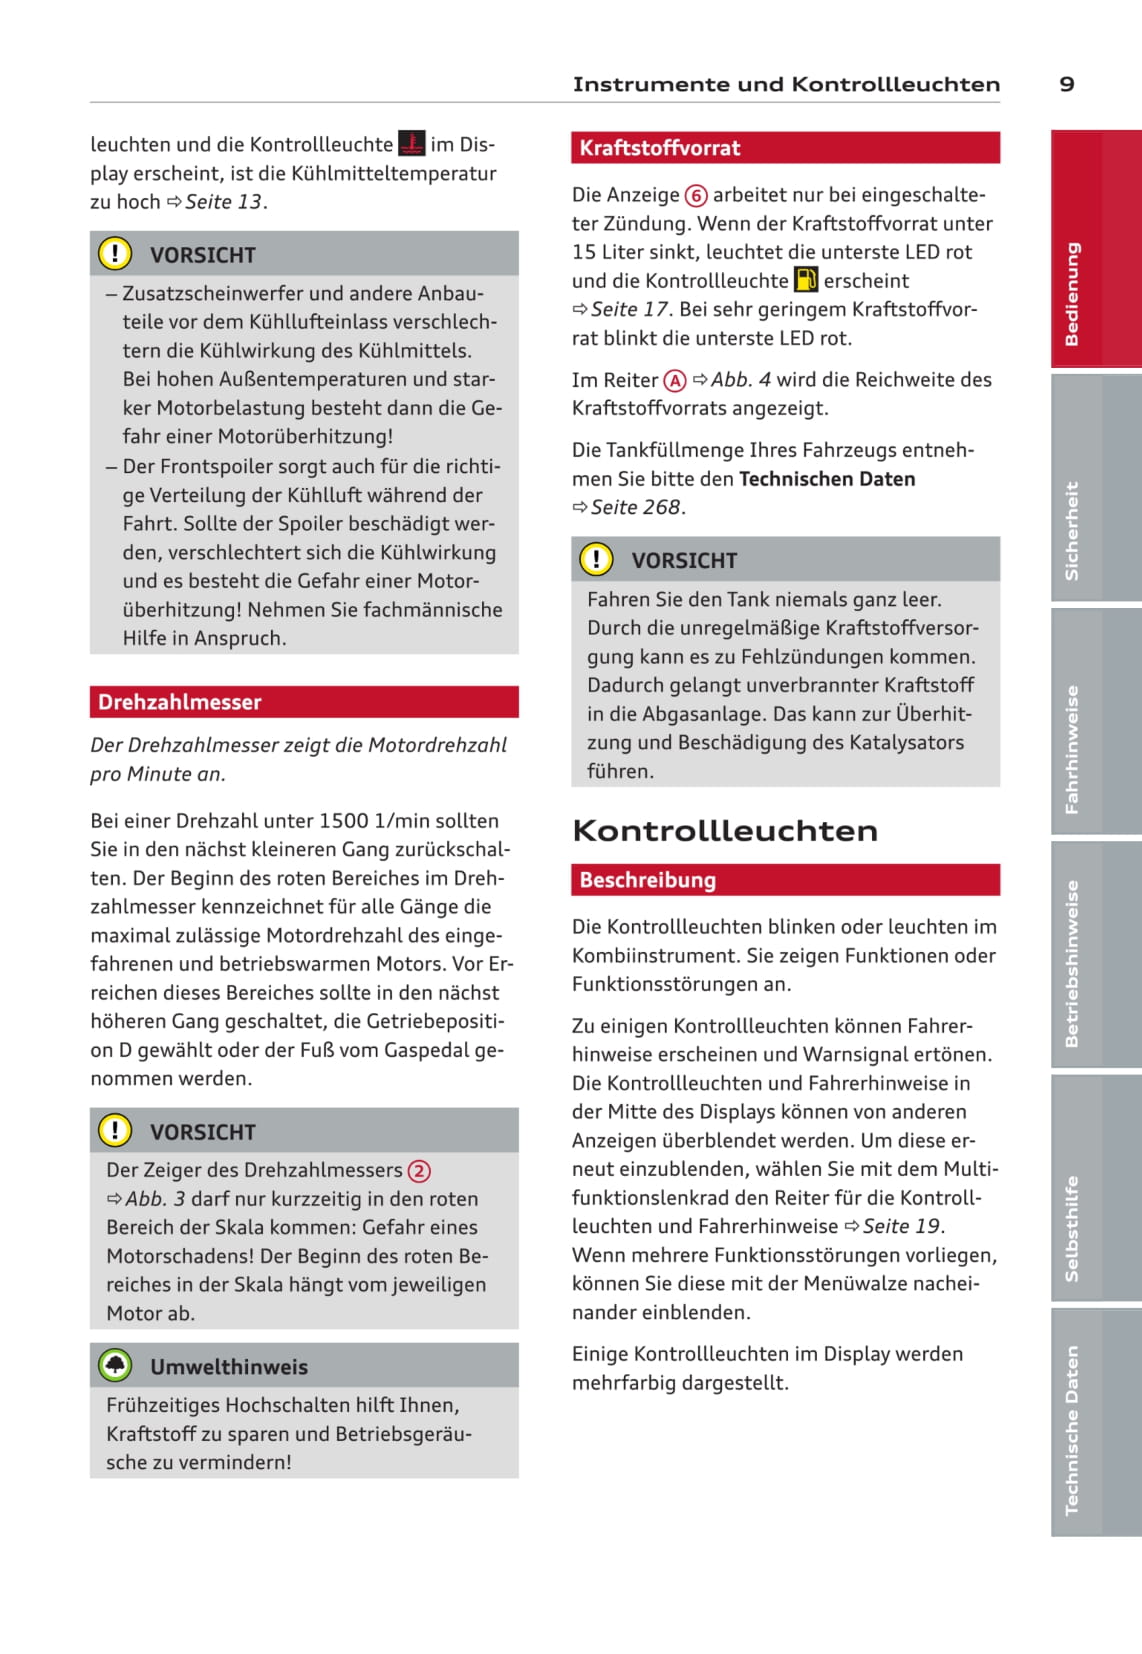 2010-2013 Audi A8/S8 Owner's Manual | German